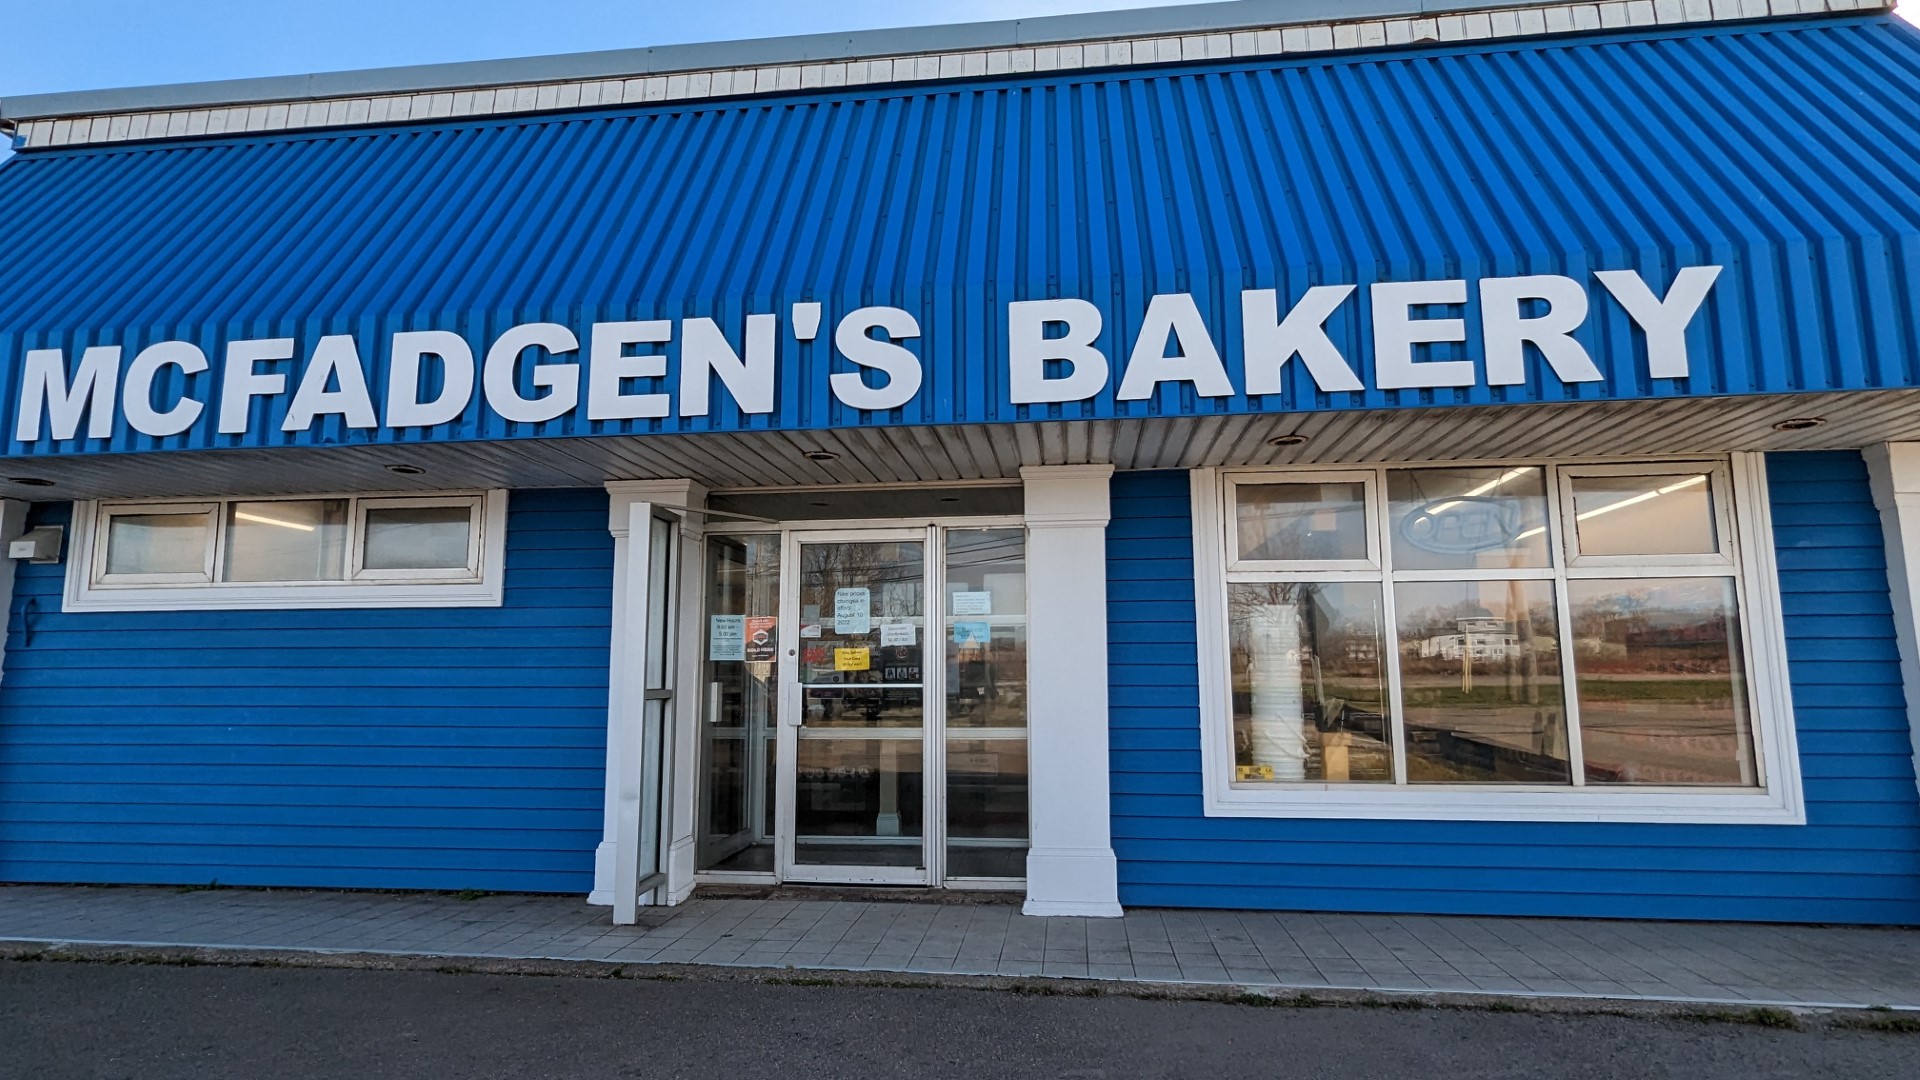 MCFadgen's bakery outside all blue